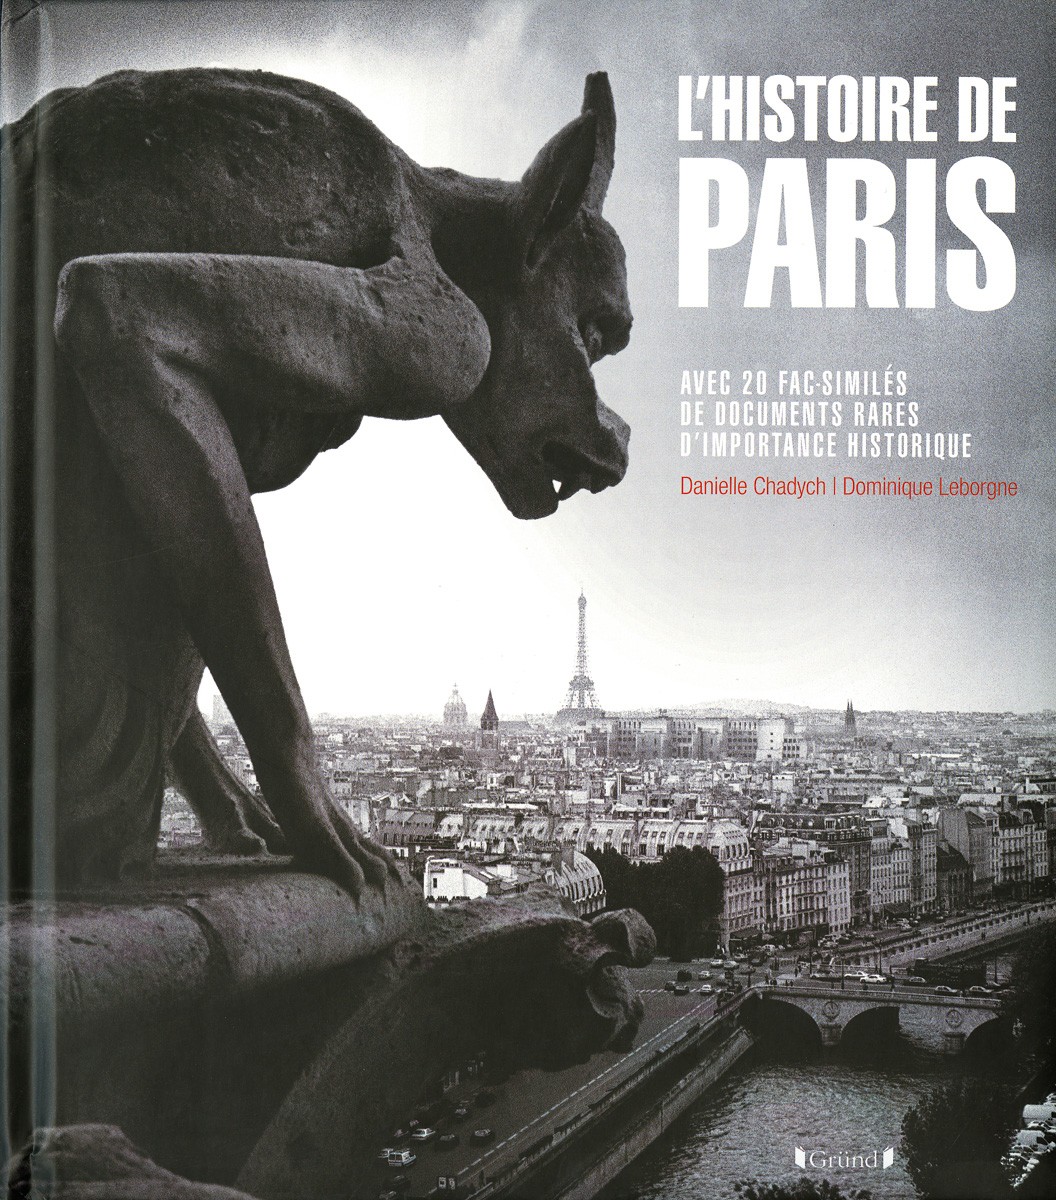 L'histoire de paris